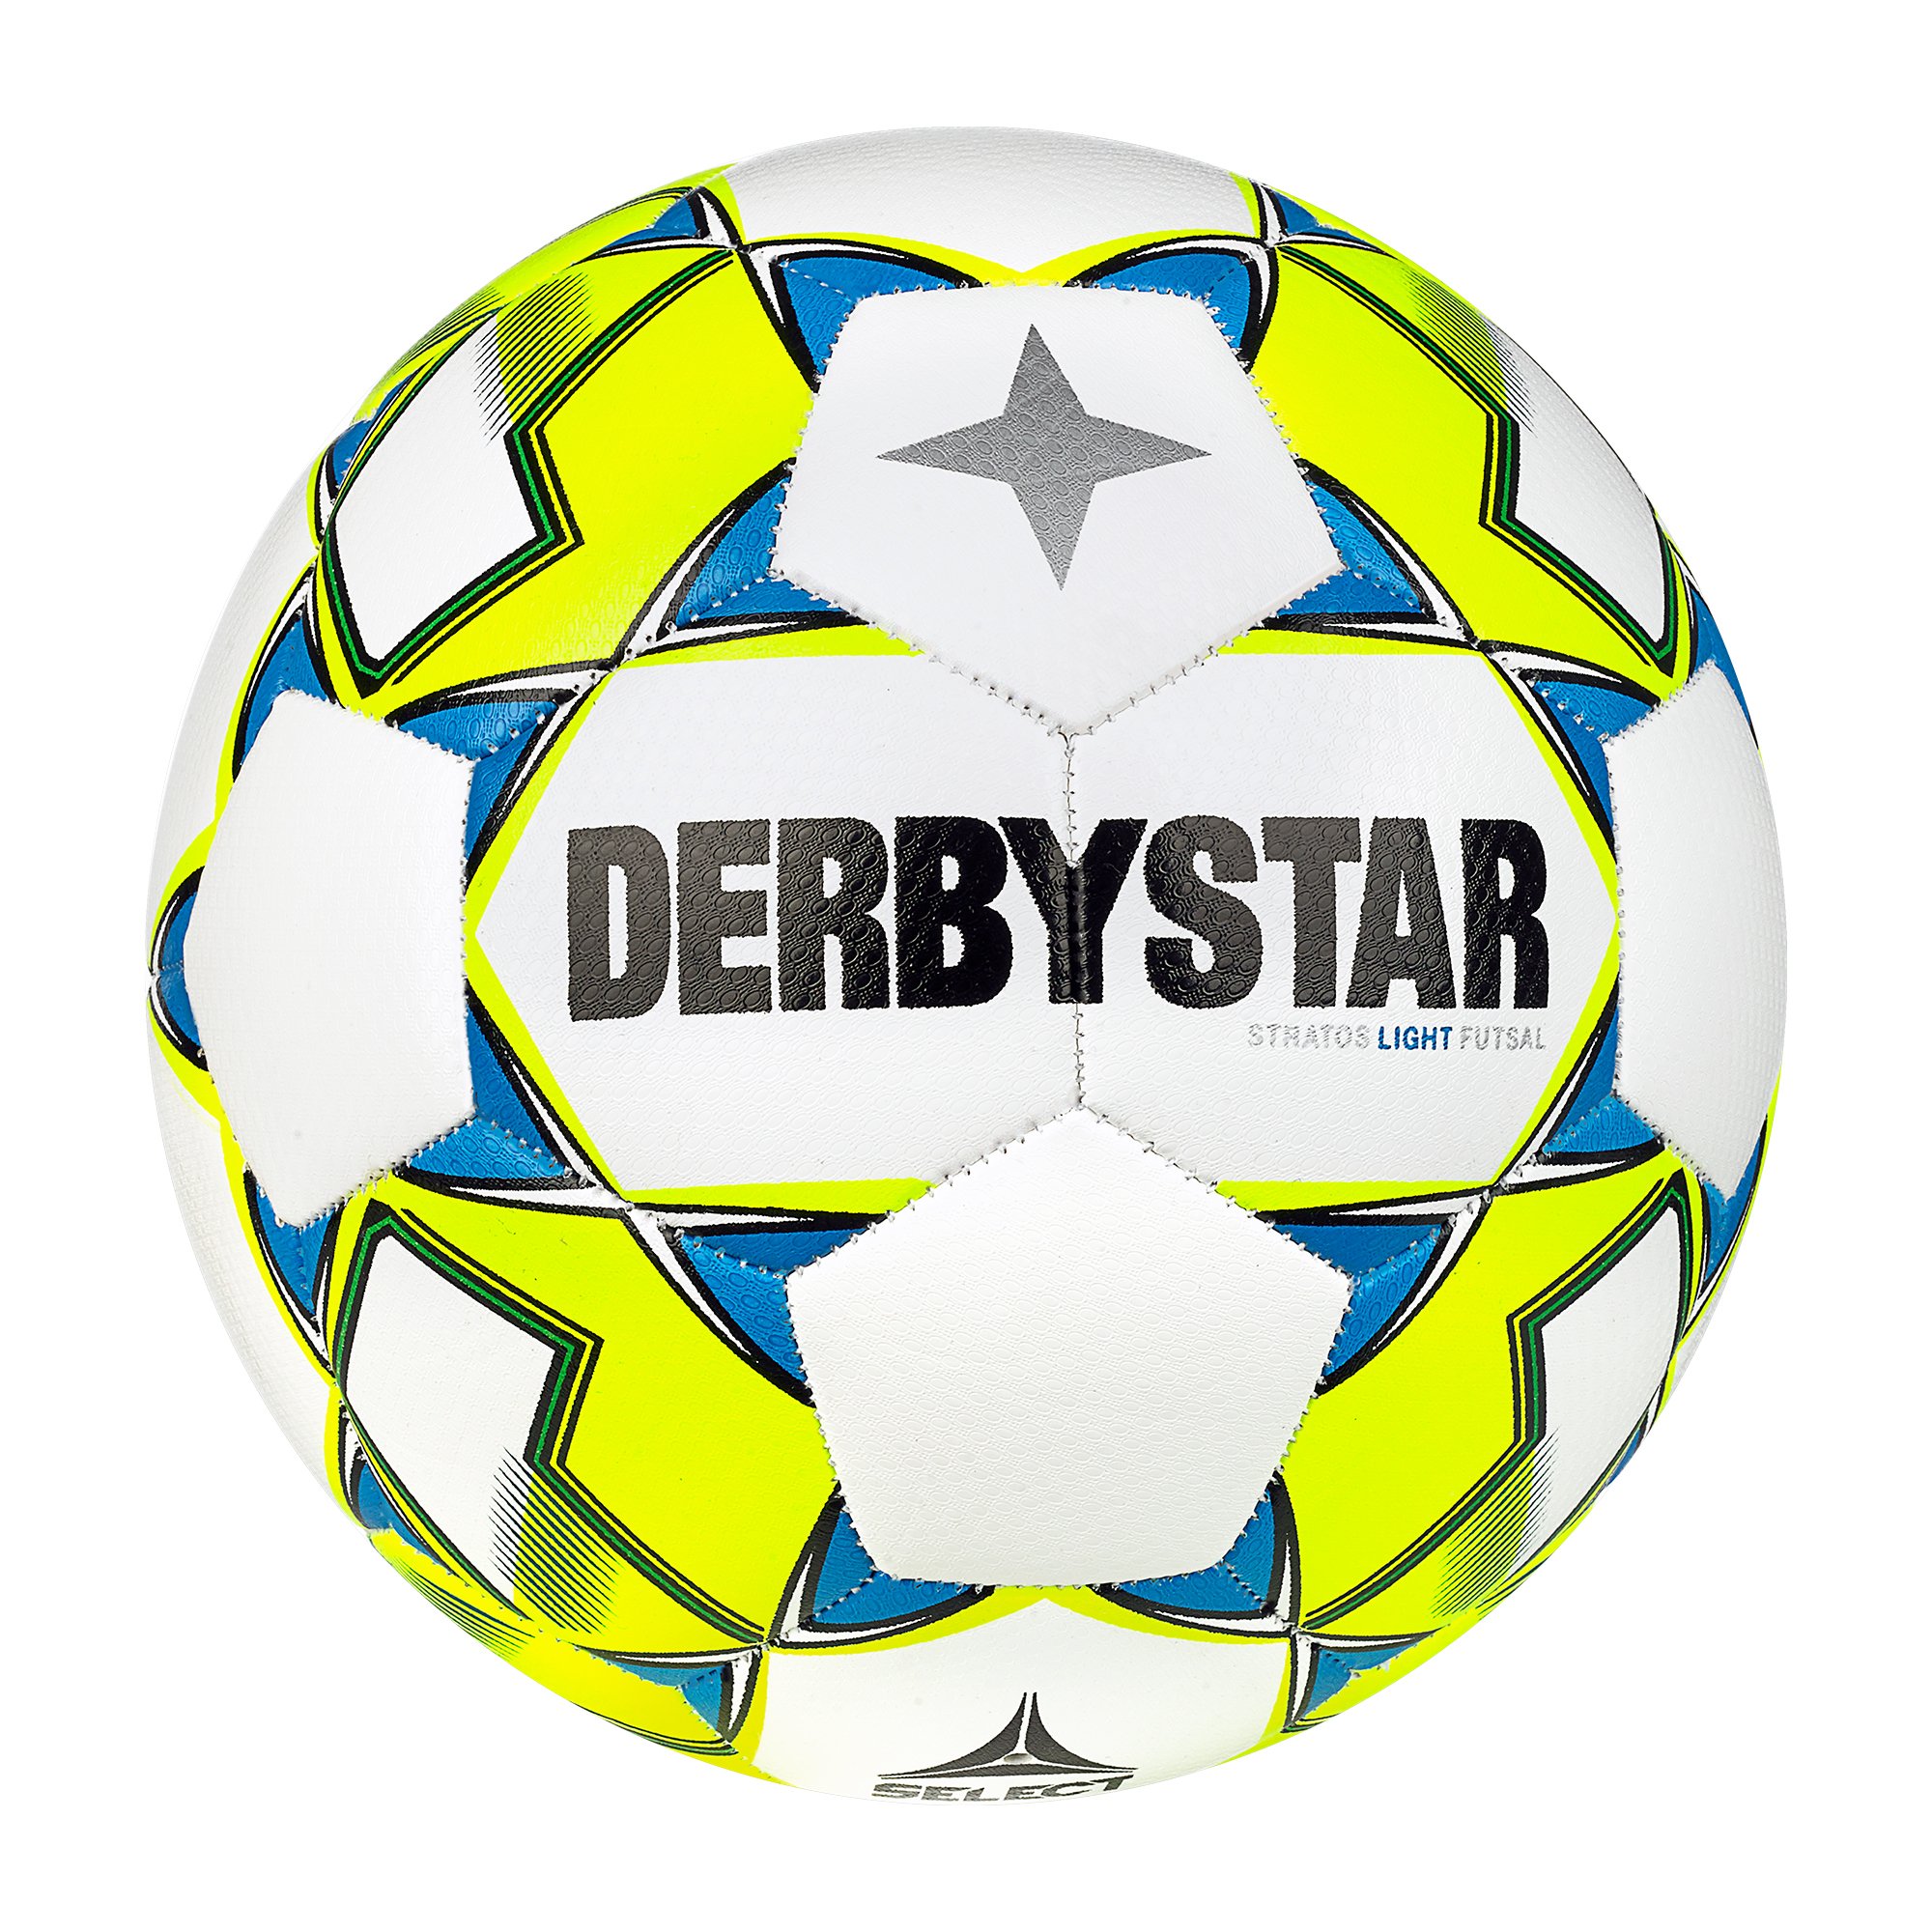 Derbystar Futsal Stratos Light v23